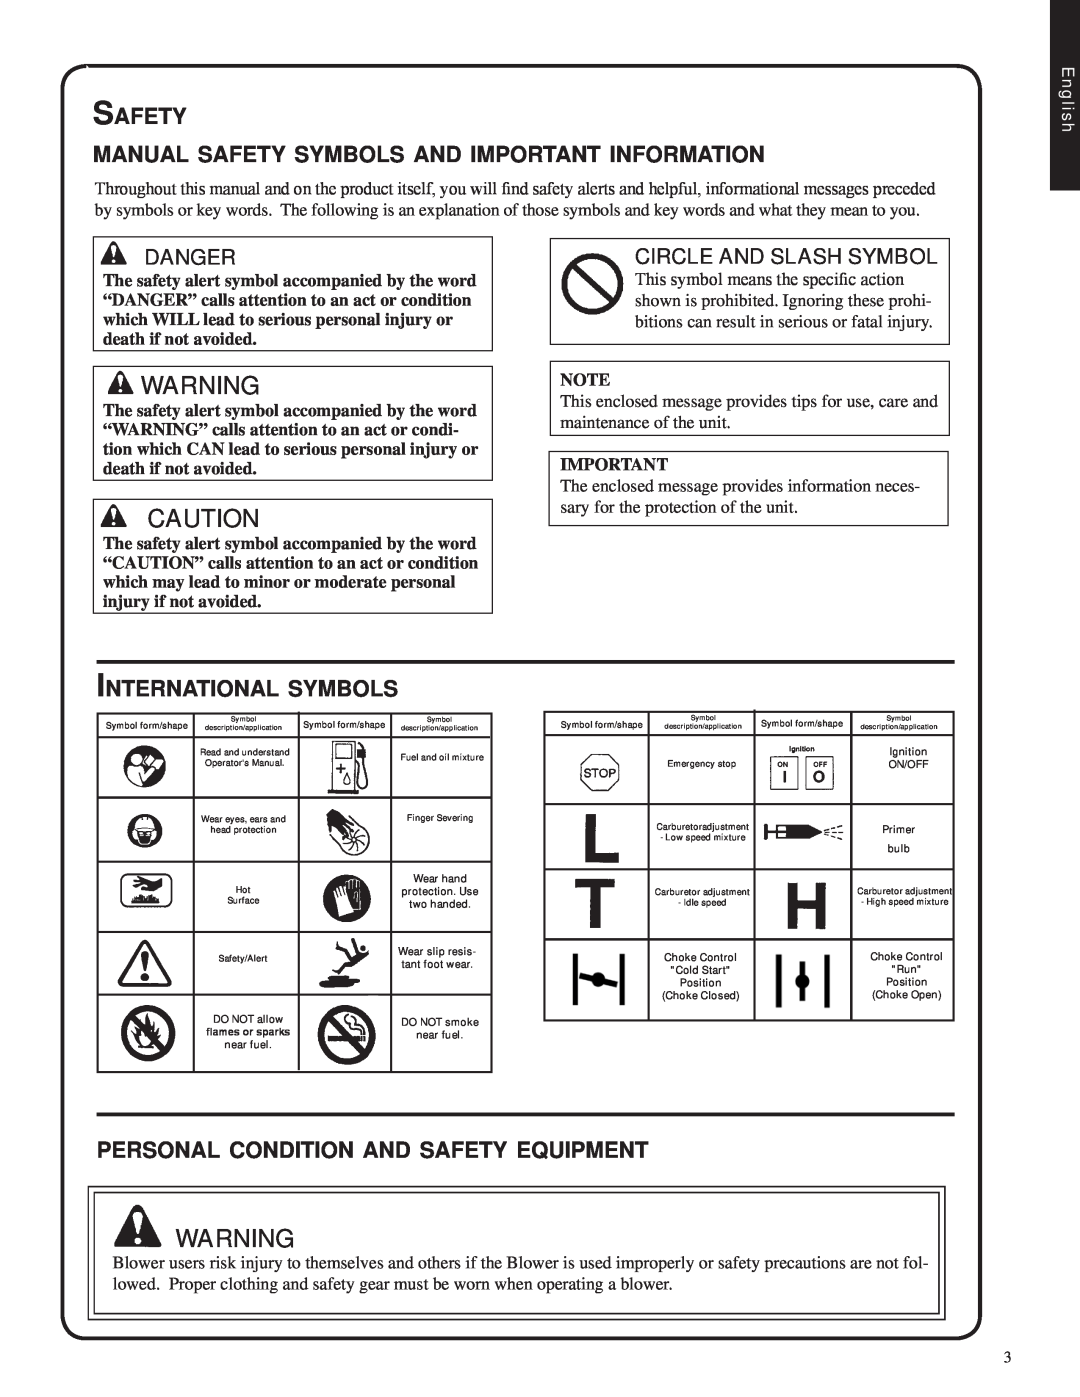 Shindaiwa 82051, EB212 Safety, manual safety symbols and important information, International symbols, Danger, English 